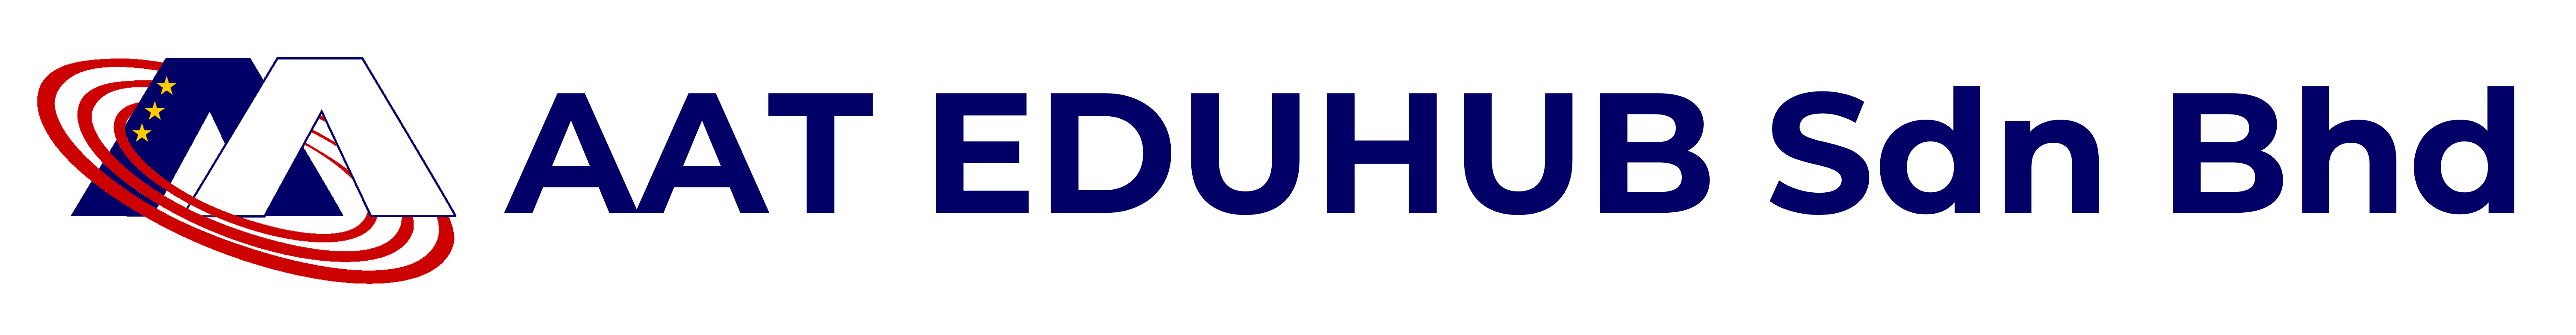 AAT Eduhub Logo